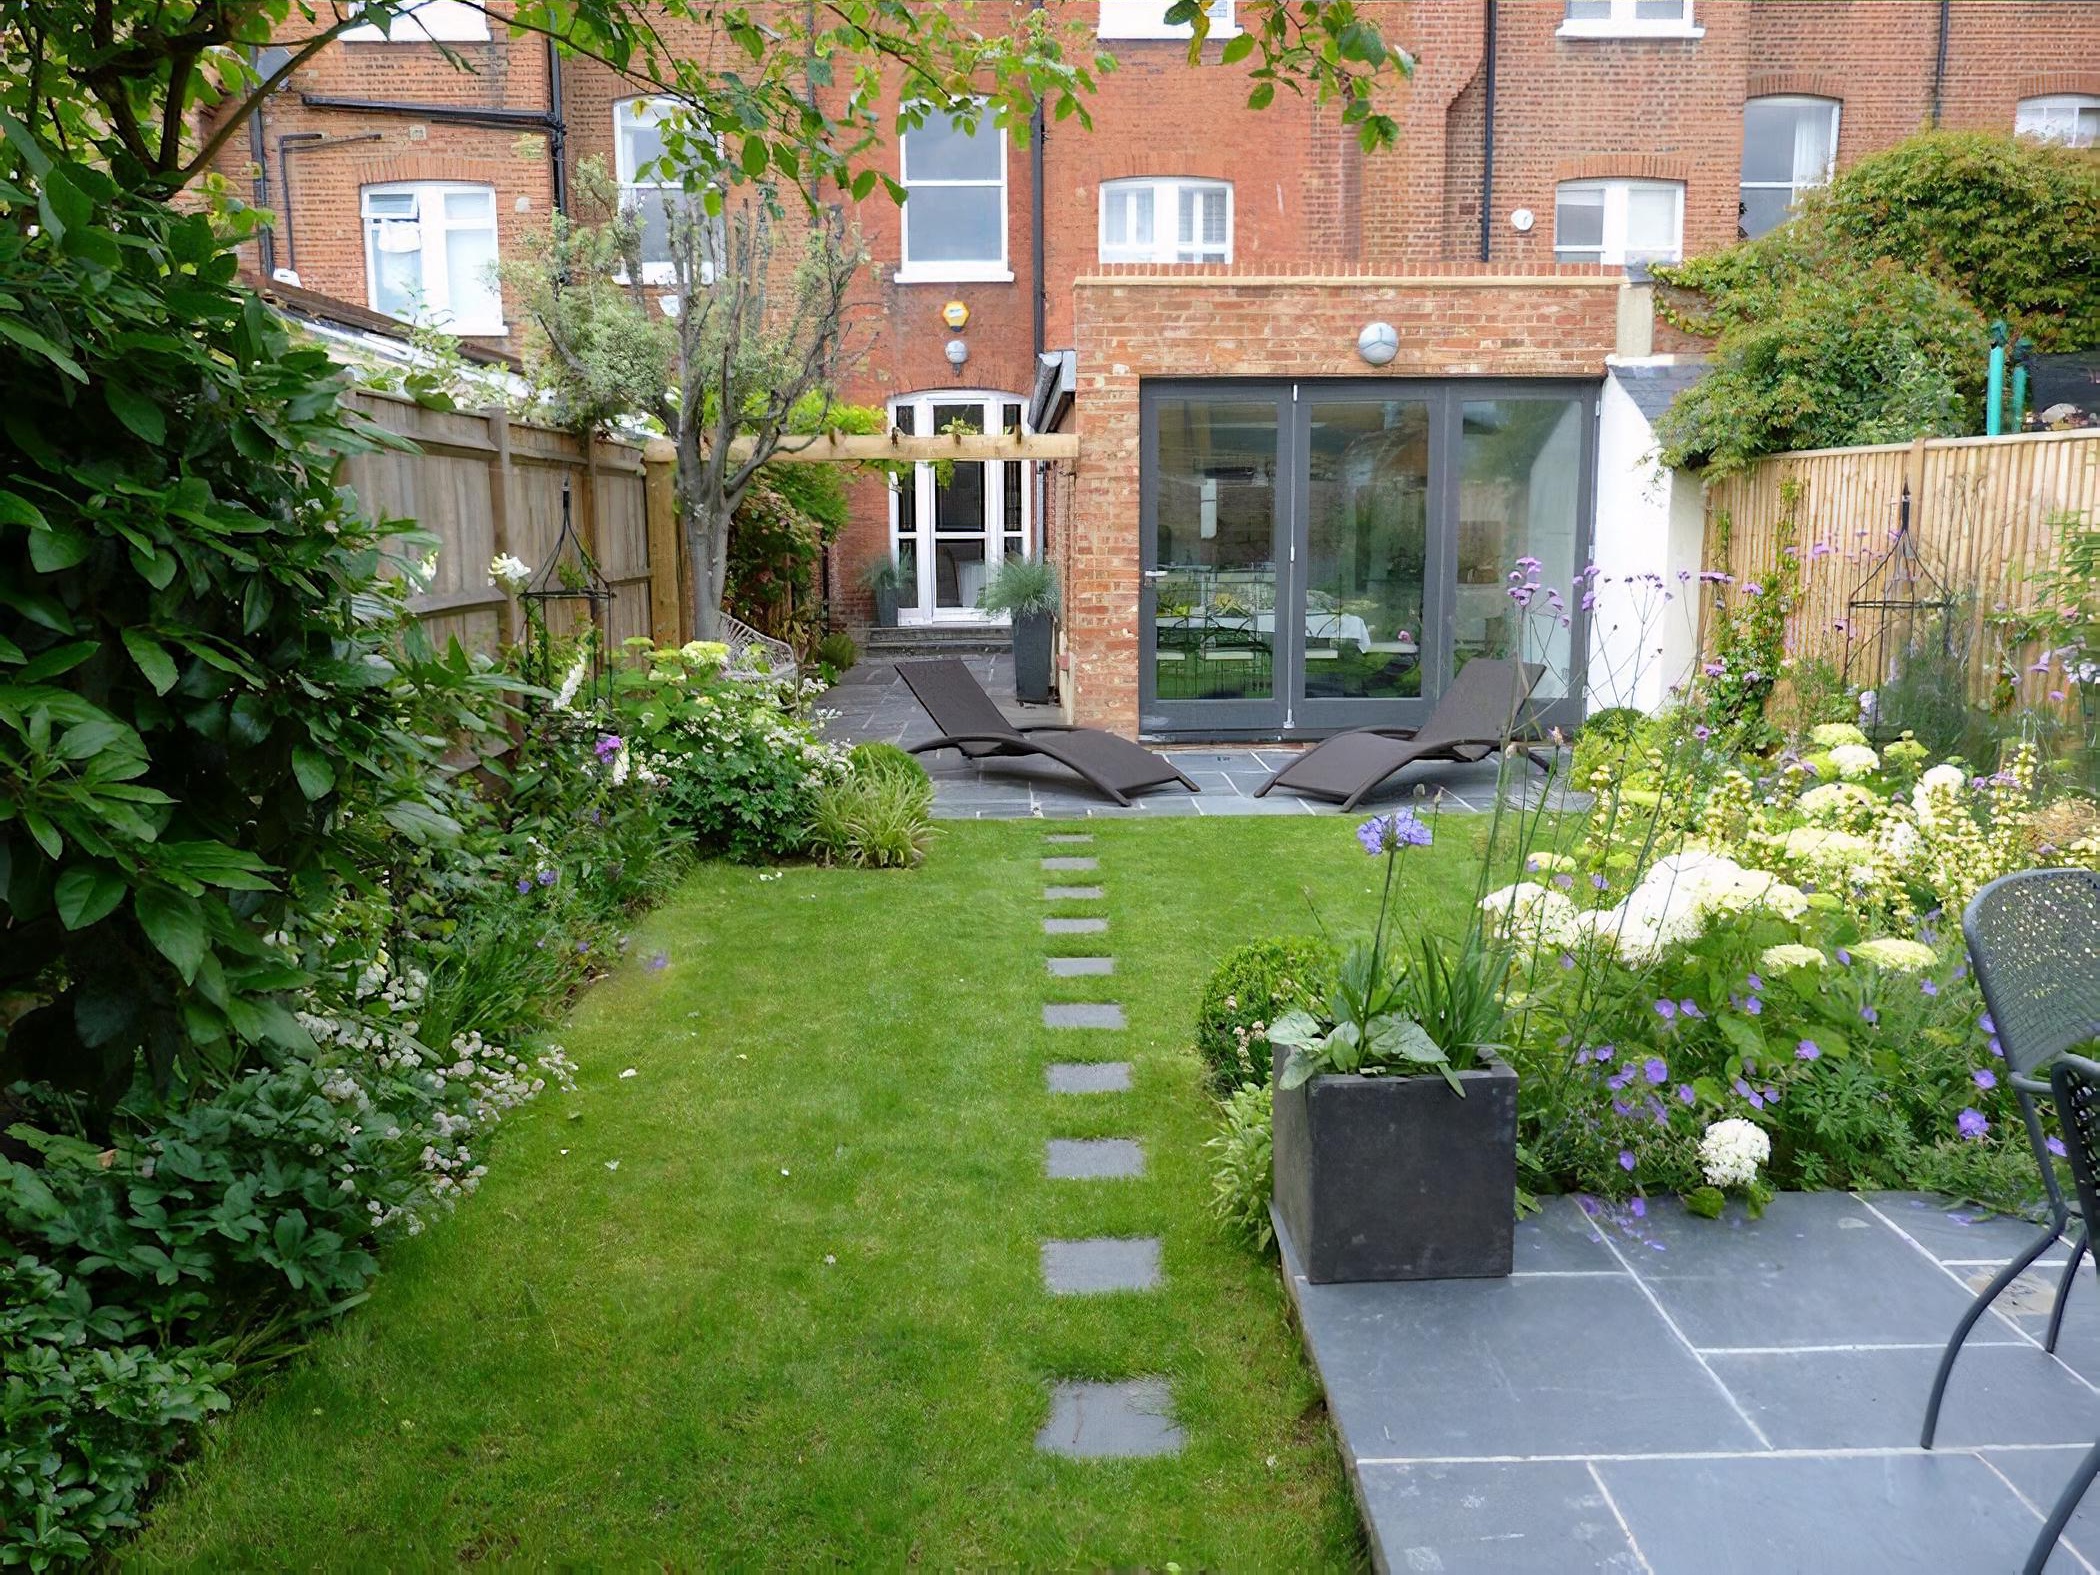 A contemporary urban garden By London based garden designer Pippa Schofield